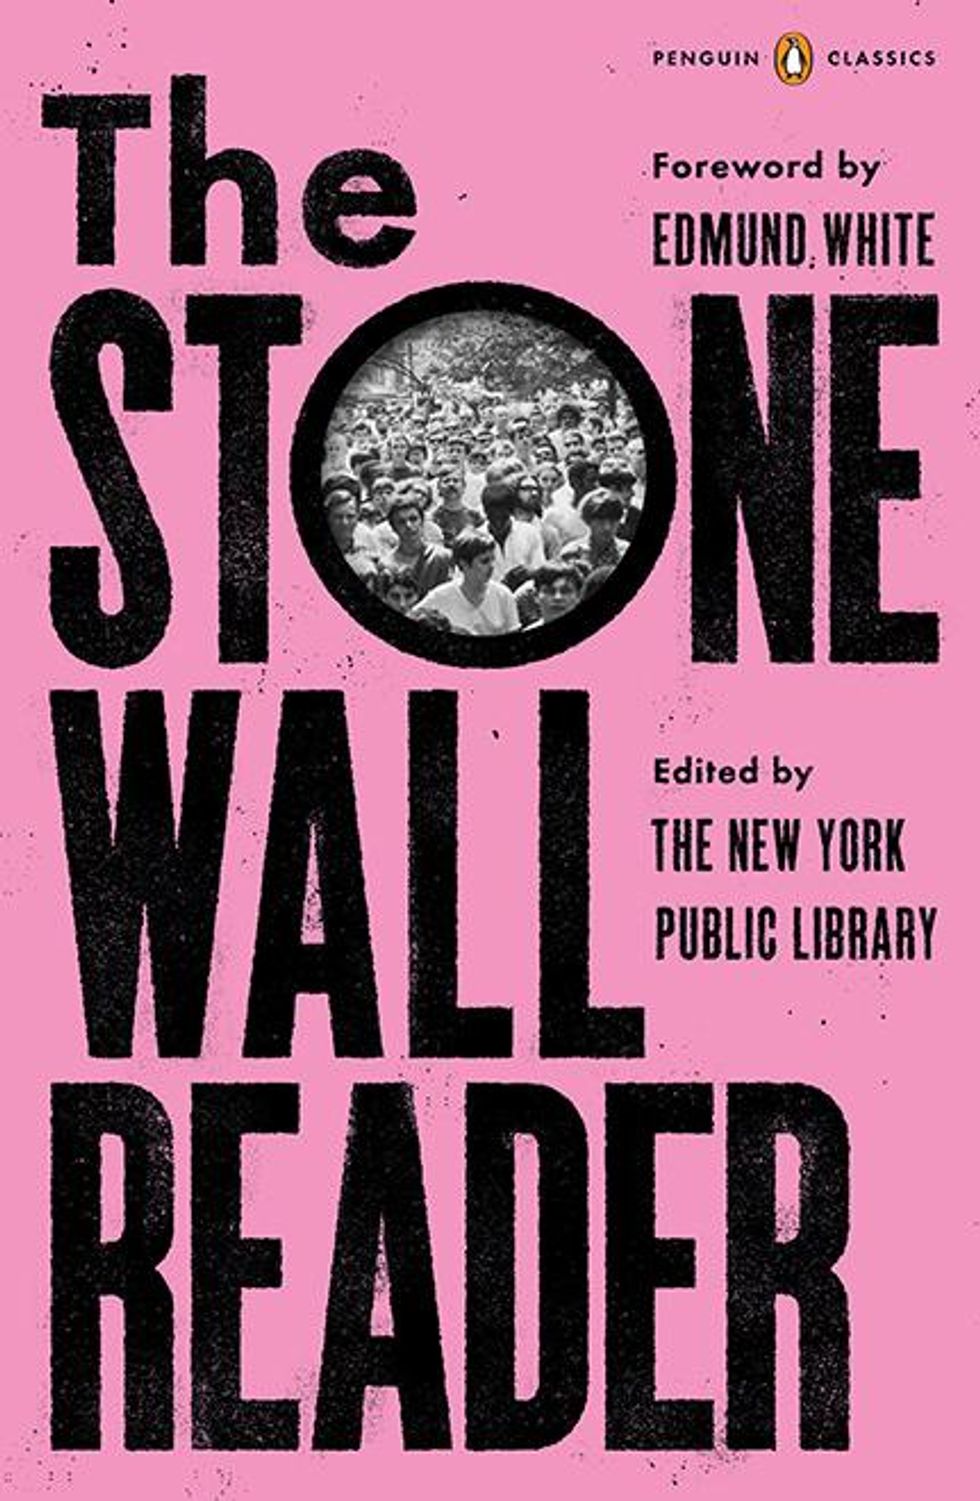 stonewall_reader.jpg